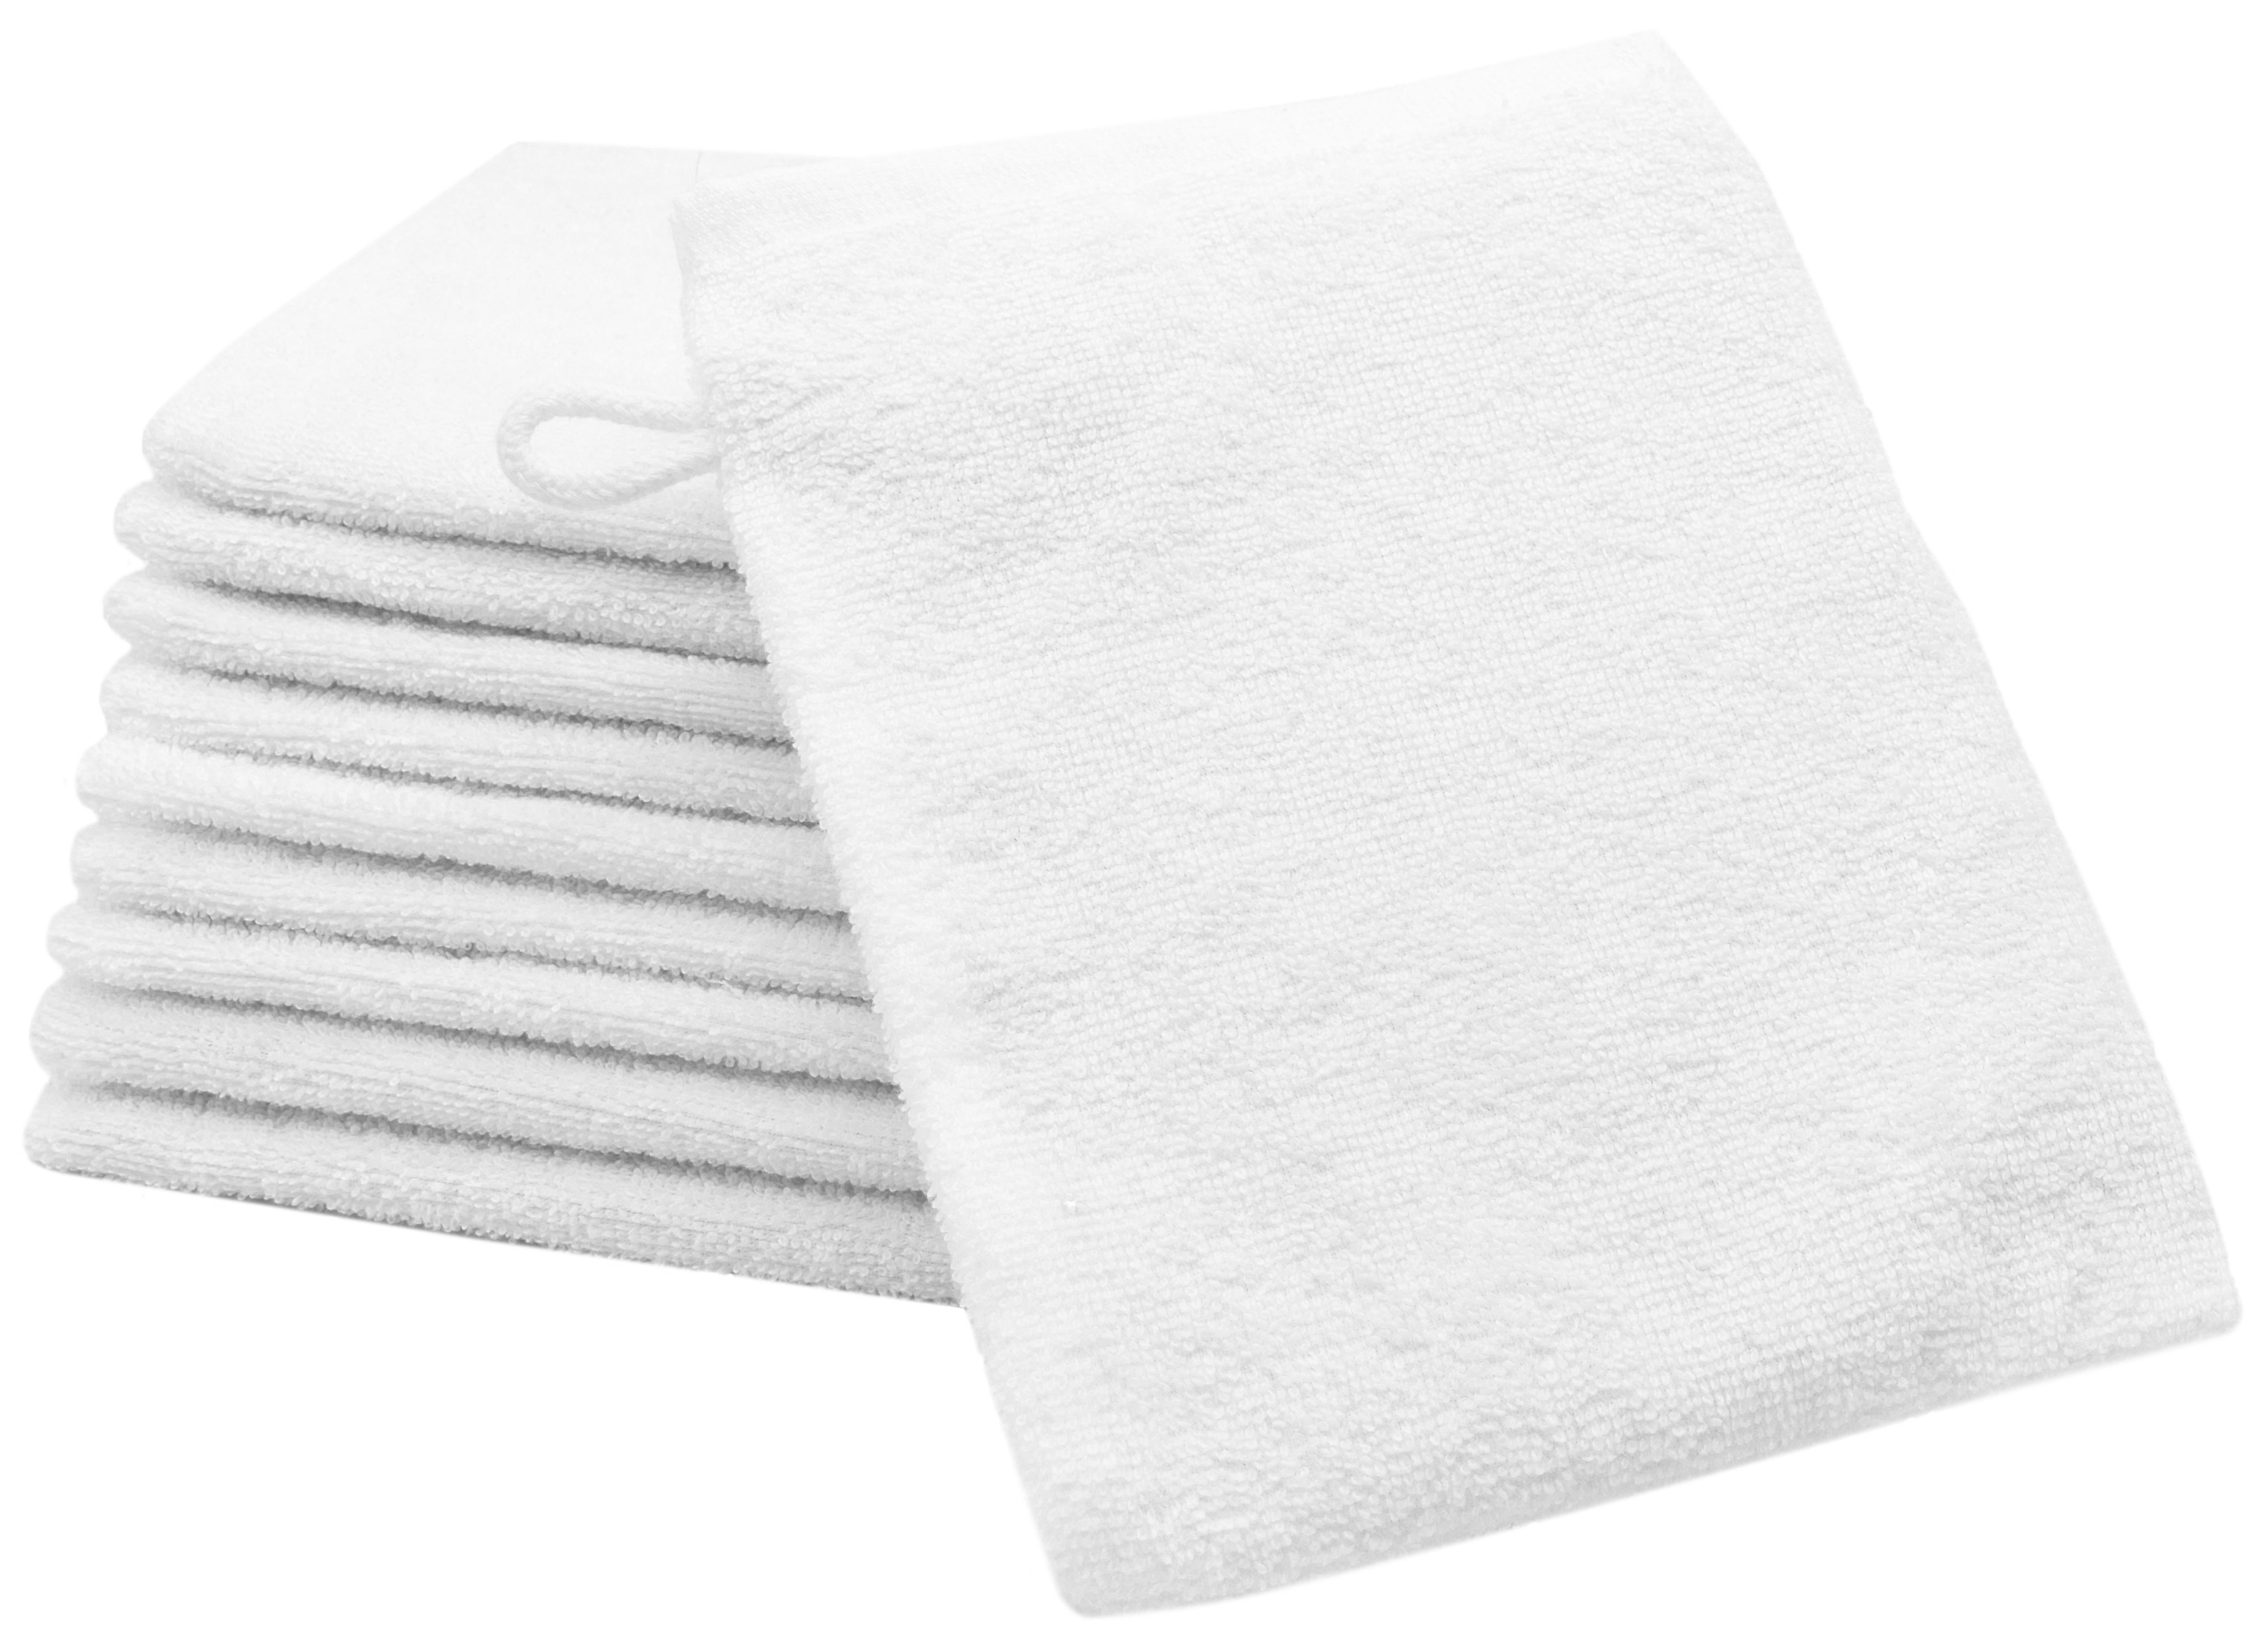 Waschlappen 10er-Set, 100% Baumwolle, 16x21 cm, weiß